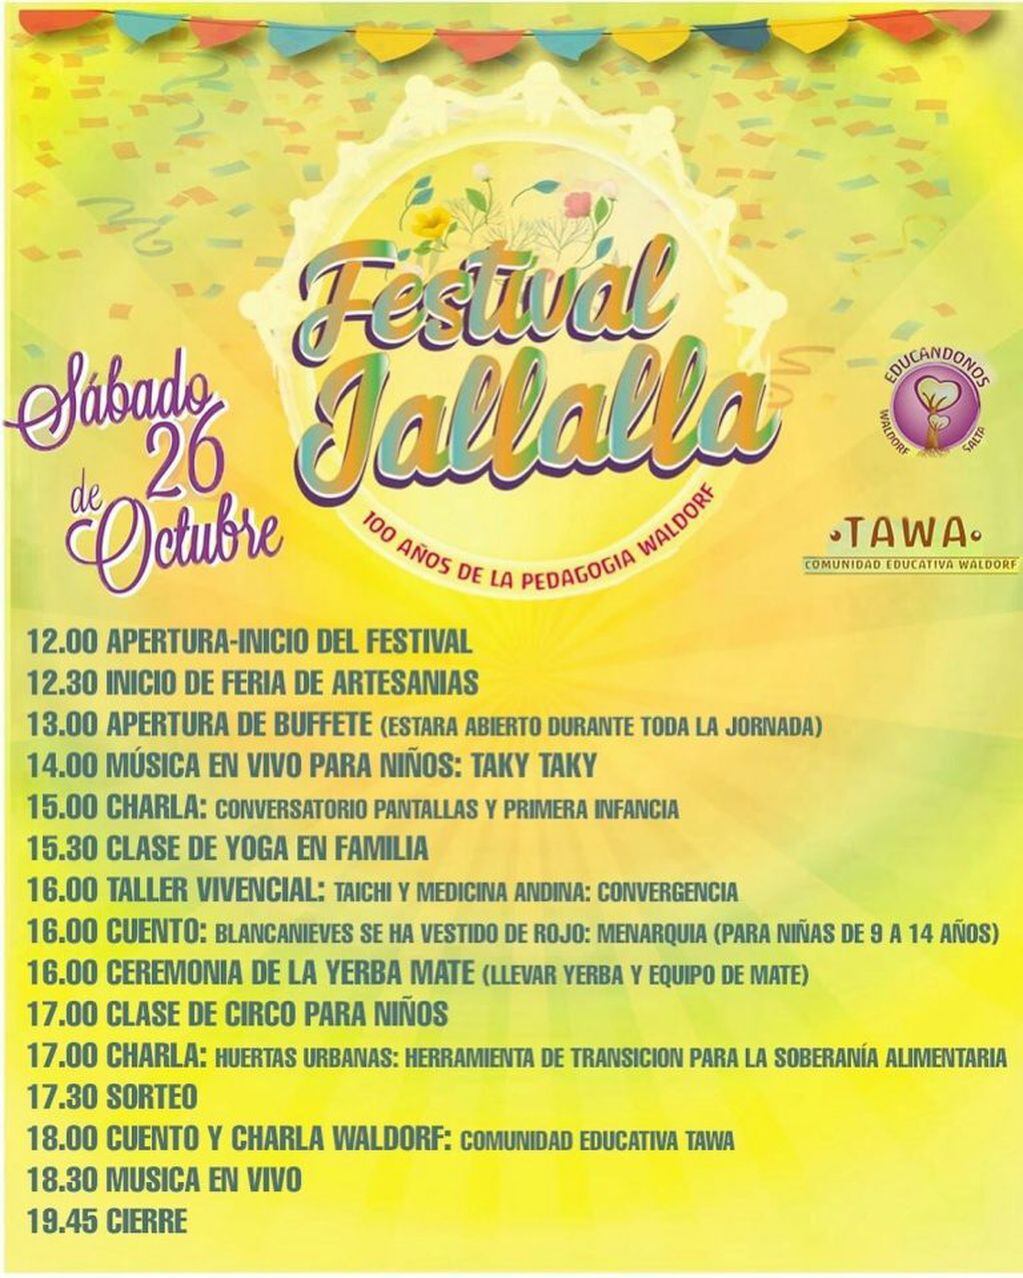 Festival Jallalla (Facebook WaldorfTawa)